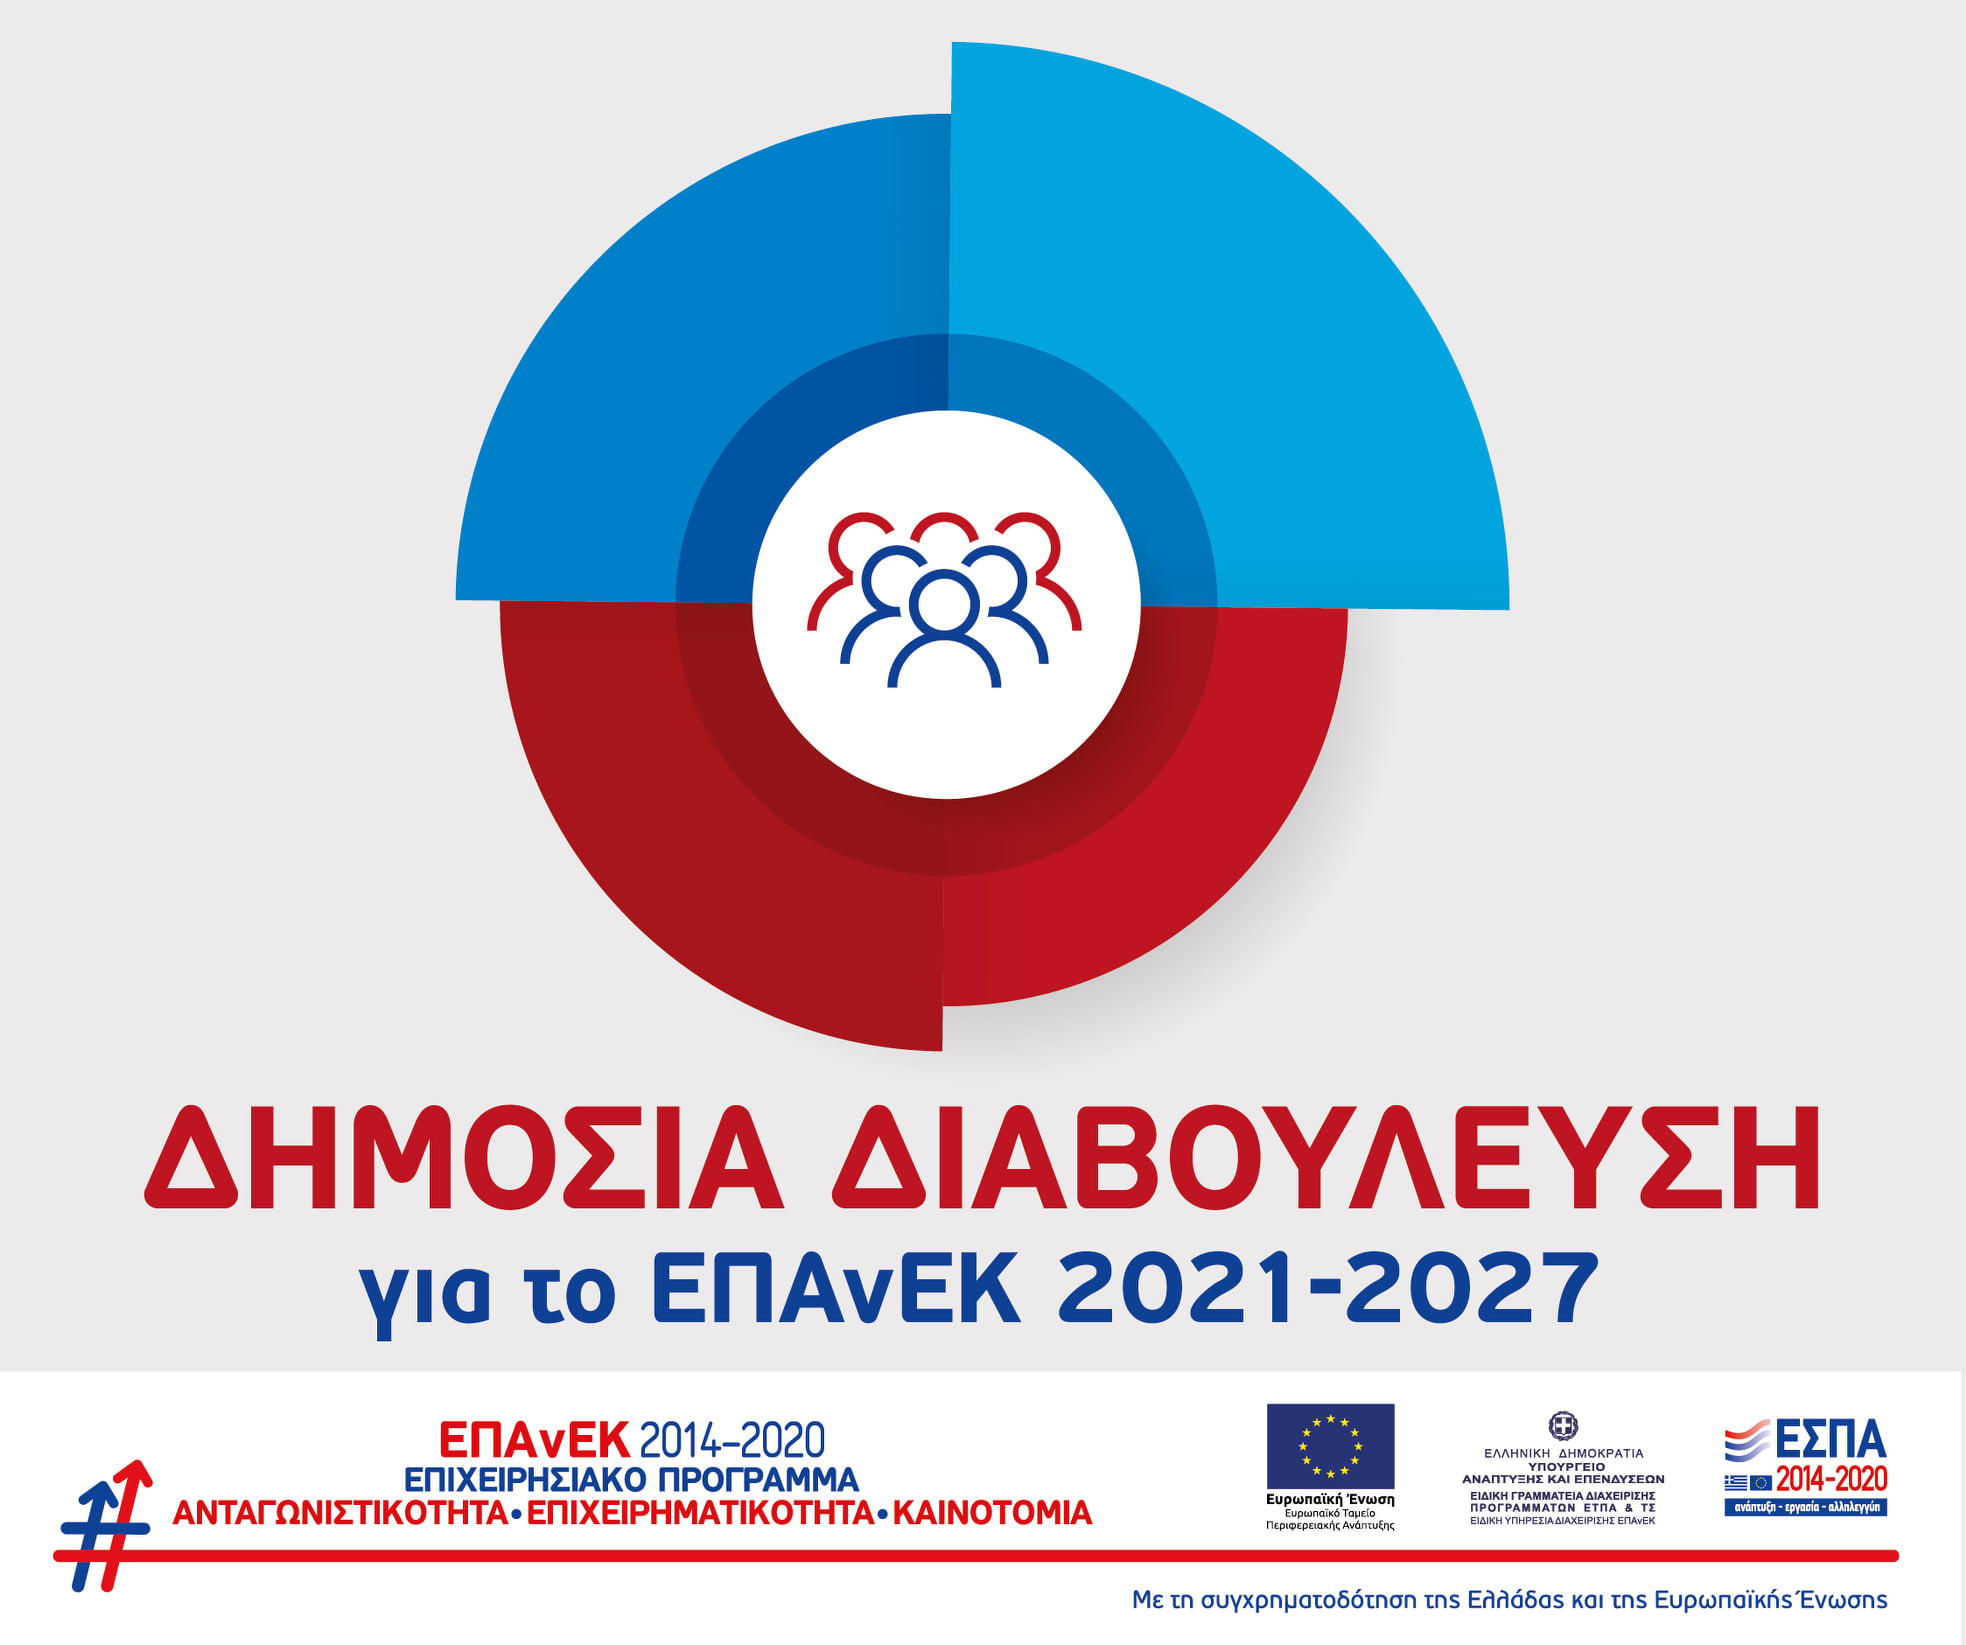 More information about "Διαβούλευση για το σχέδιο Επιχειρησιακού Προγράμματος  «Ανταγωνιστικότητα, Επιχειρηματικότητα και Καινοτομία 2021-2027» (ΕΠΑνΕΚ 2021-2027)"